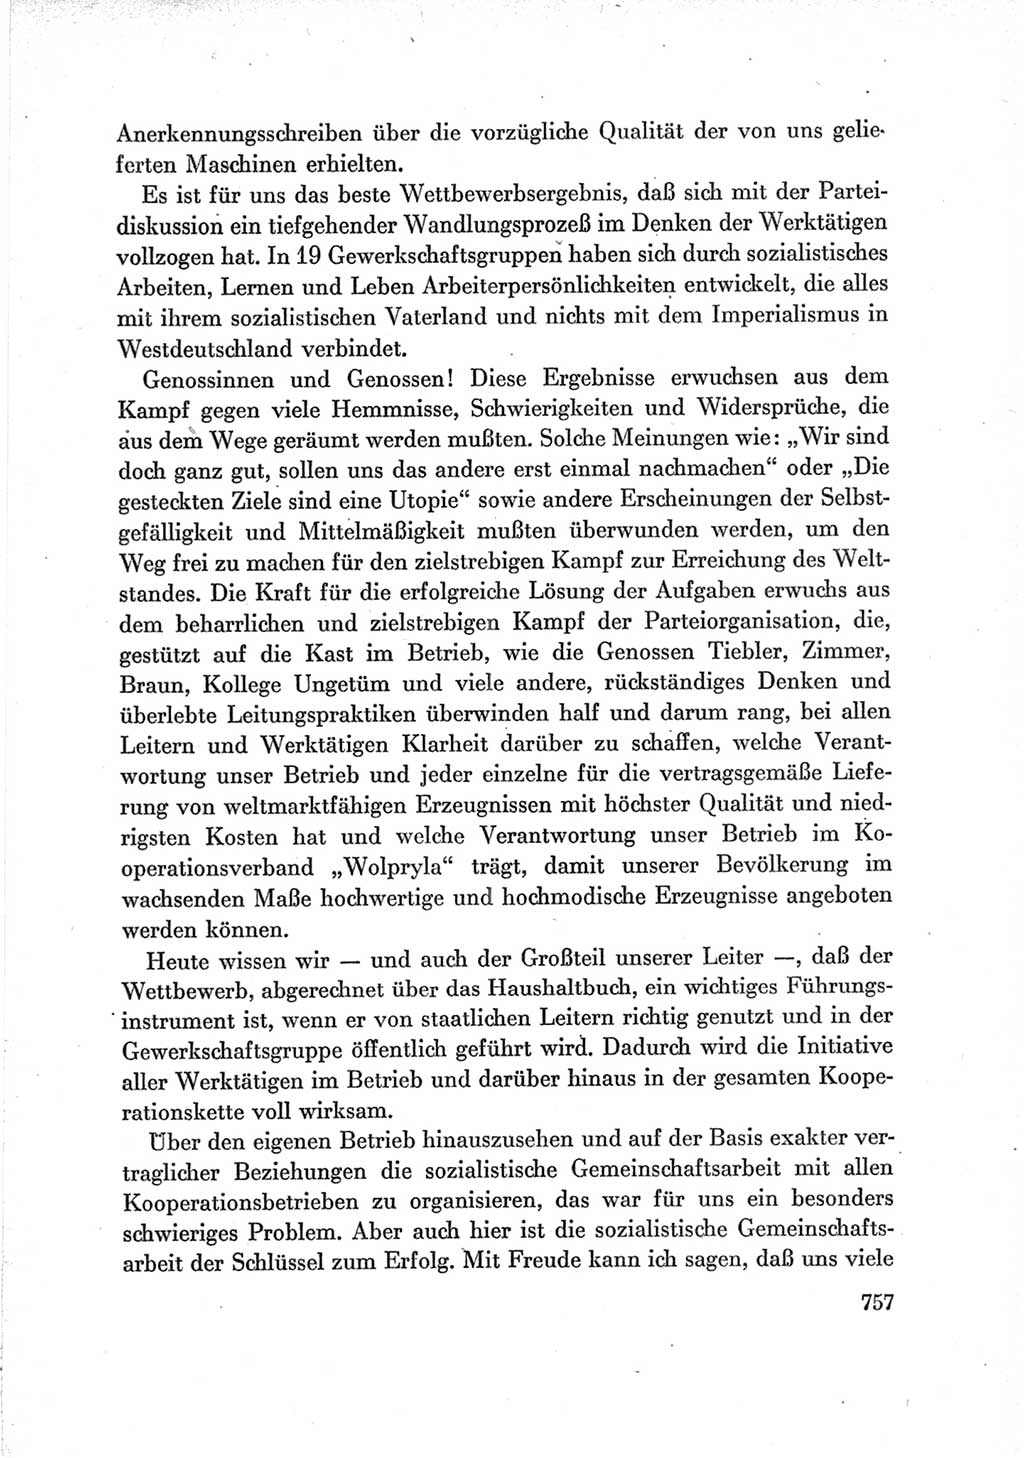 Protokoll der Verhandlungen des Ⅶ. Parteitages der Sozialistischen Einheitspartei Deutschlands (SED) [Deutsche Demokratische Republik (DDR)] 1967, Band Ⅲ, Seite 757 (Prot. Verh. Ⅶ. PT SED DDR 1967, Bd. Ⅲ, S. 757)